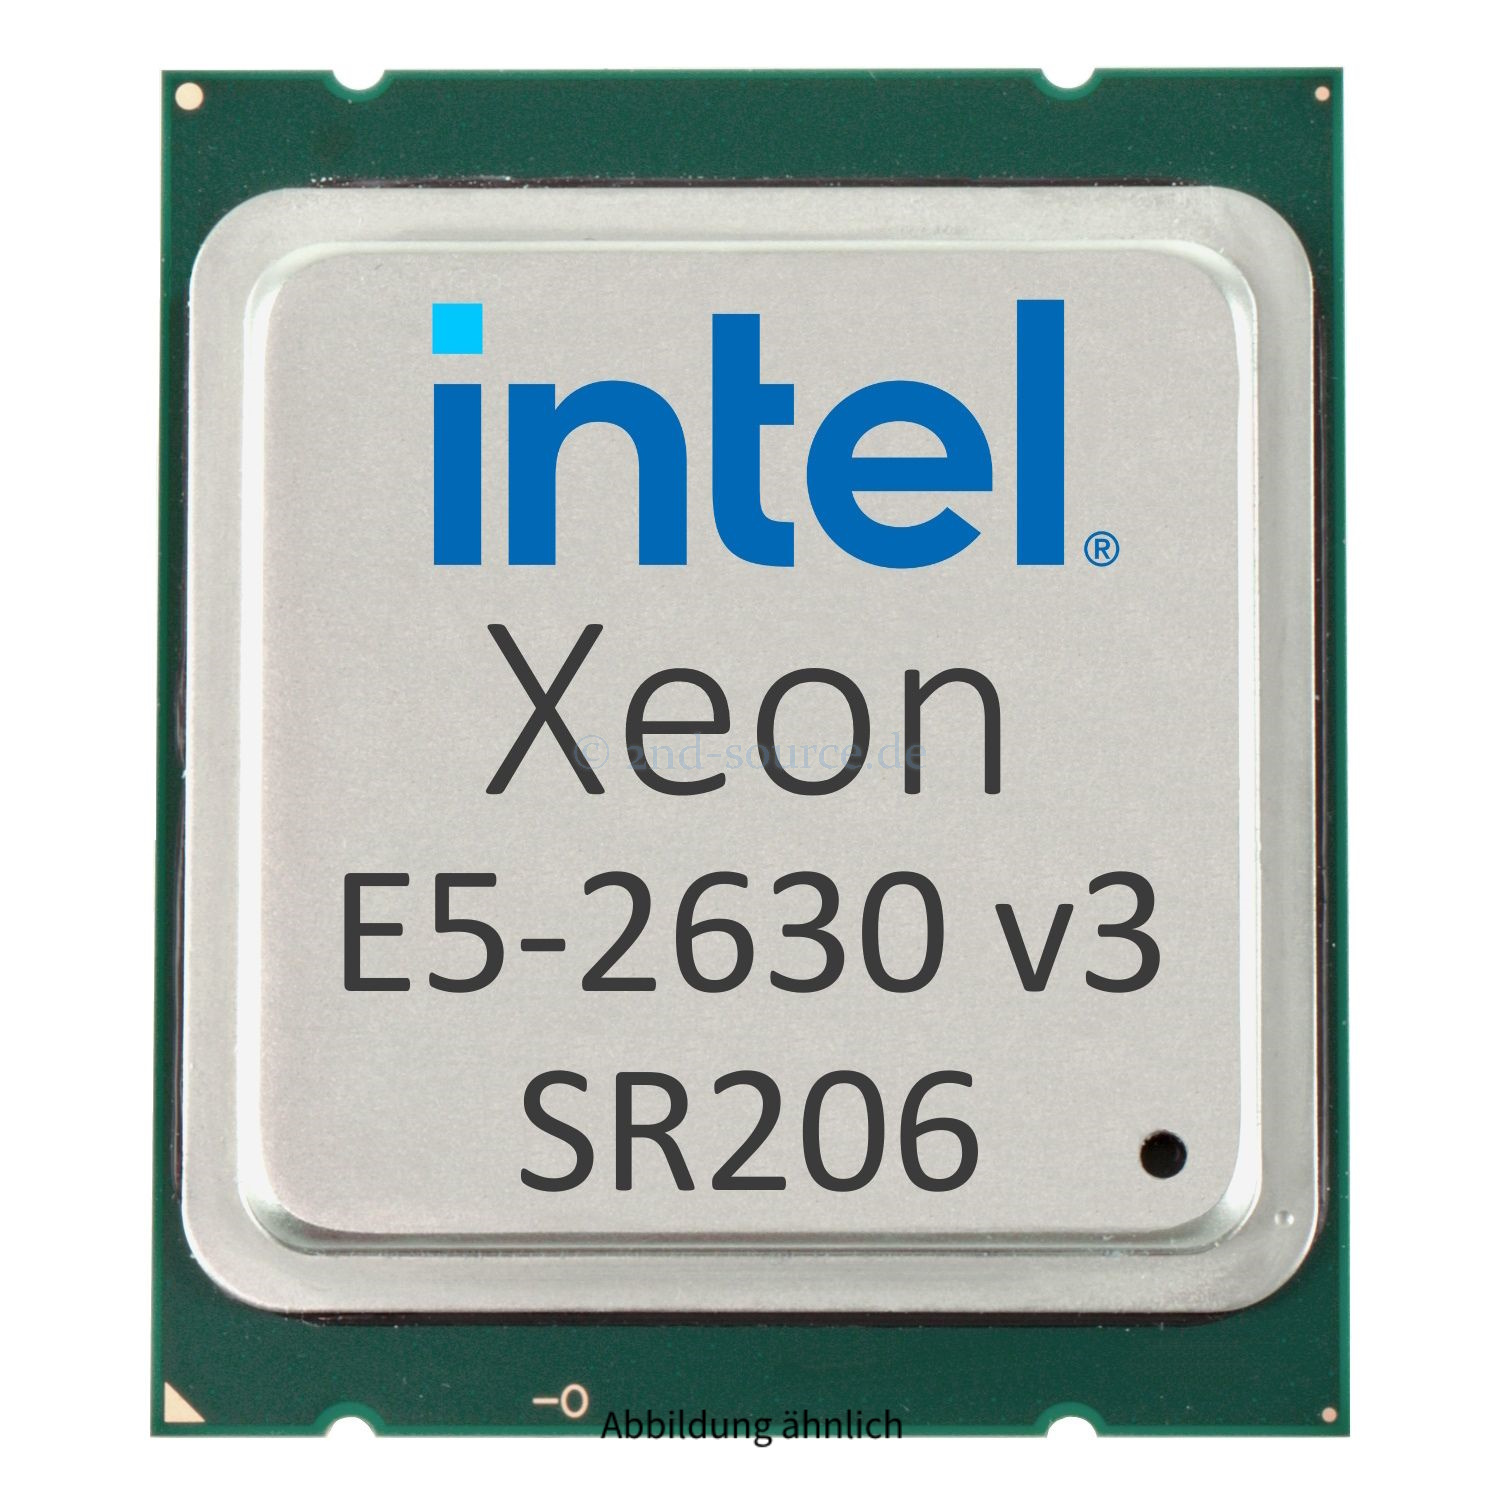 Intel Xeon E5-2630 v3 2.40GHz 20MB 8-Core CPU 85W SR206 CM8064401831000